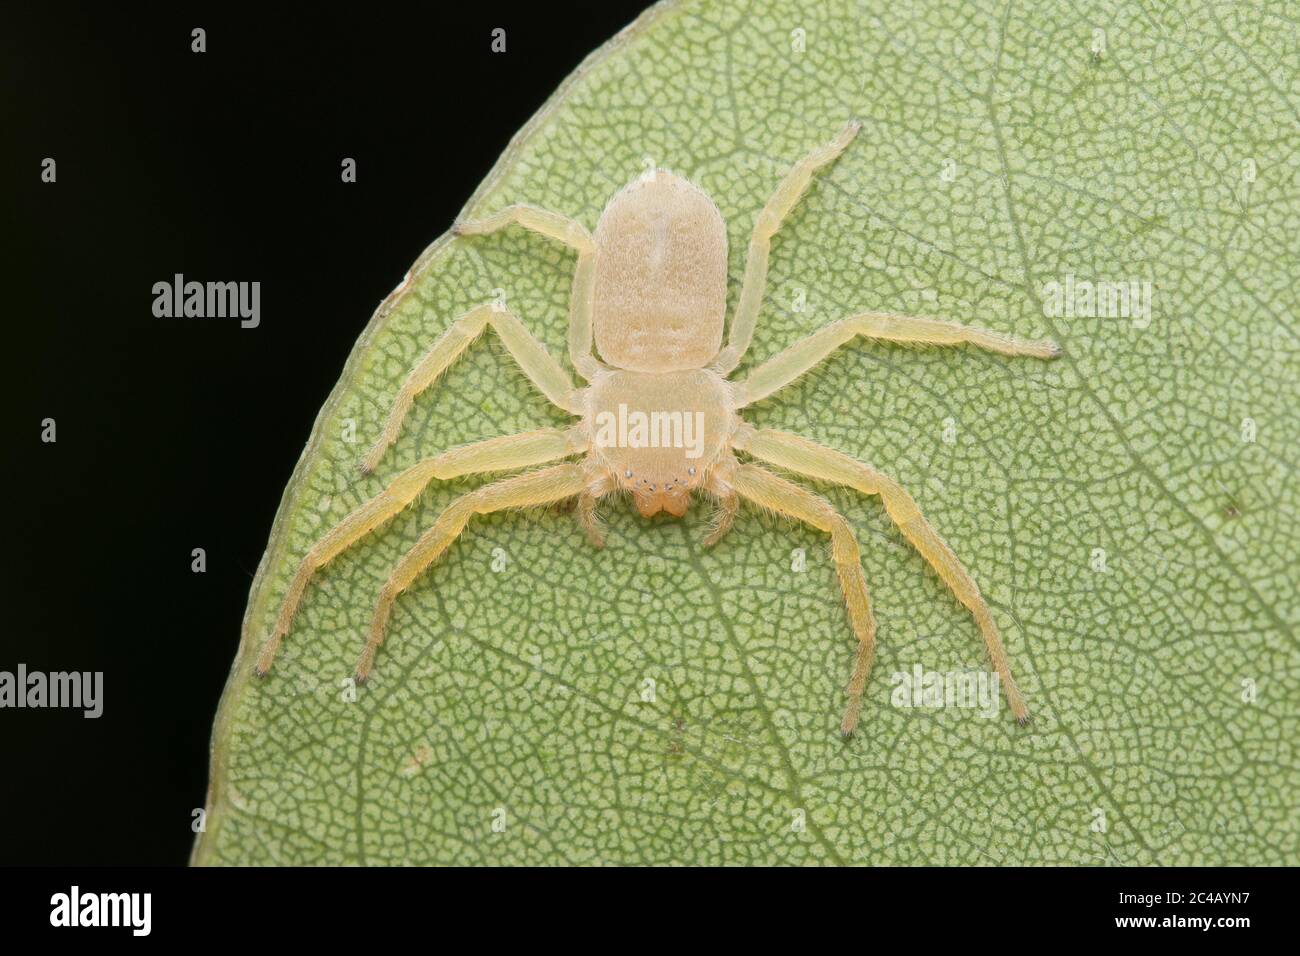 Araignée plate de crabe (selenopidae) reposant sur la feuille Banque D'Images